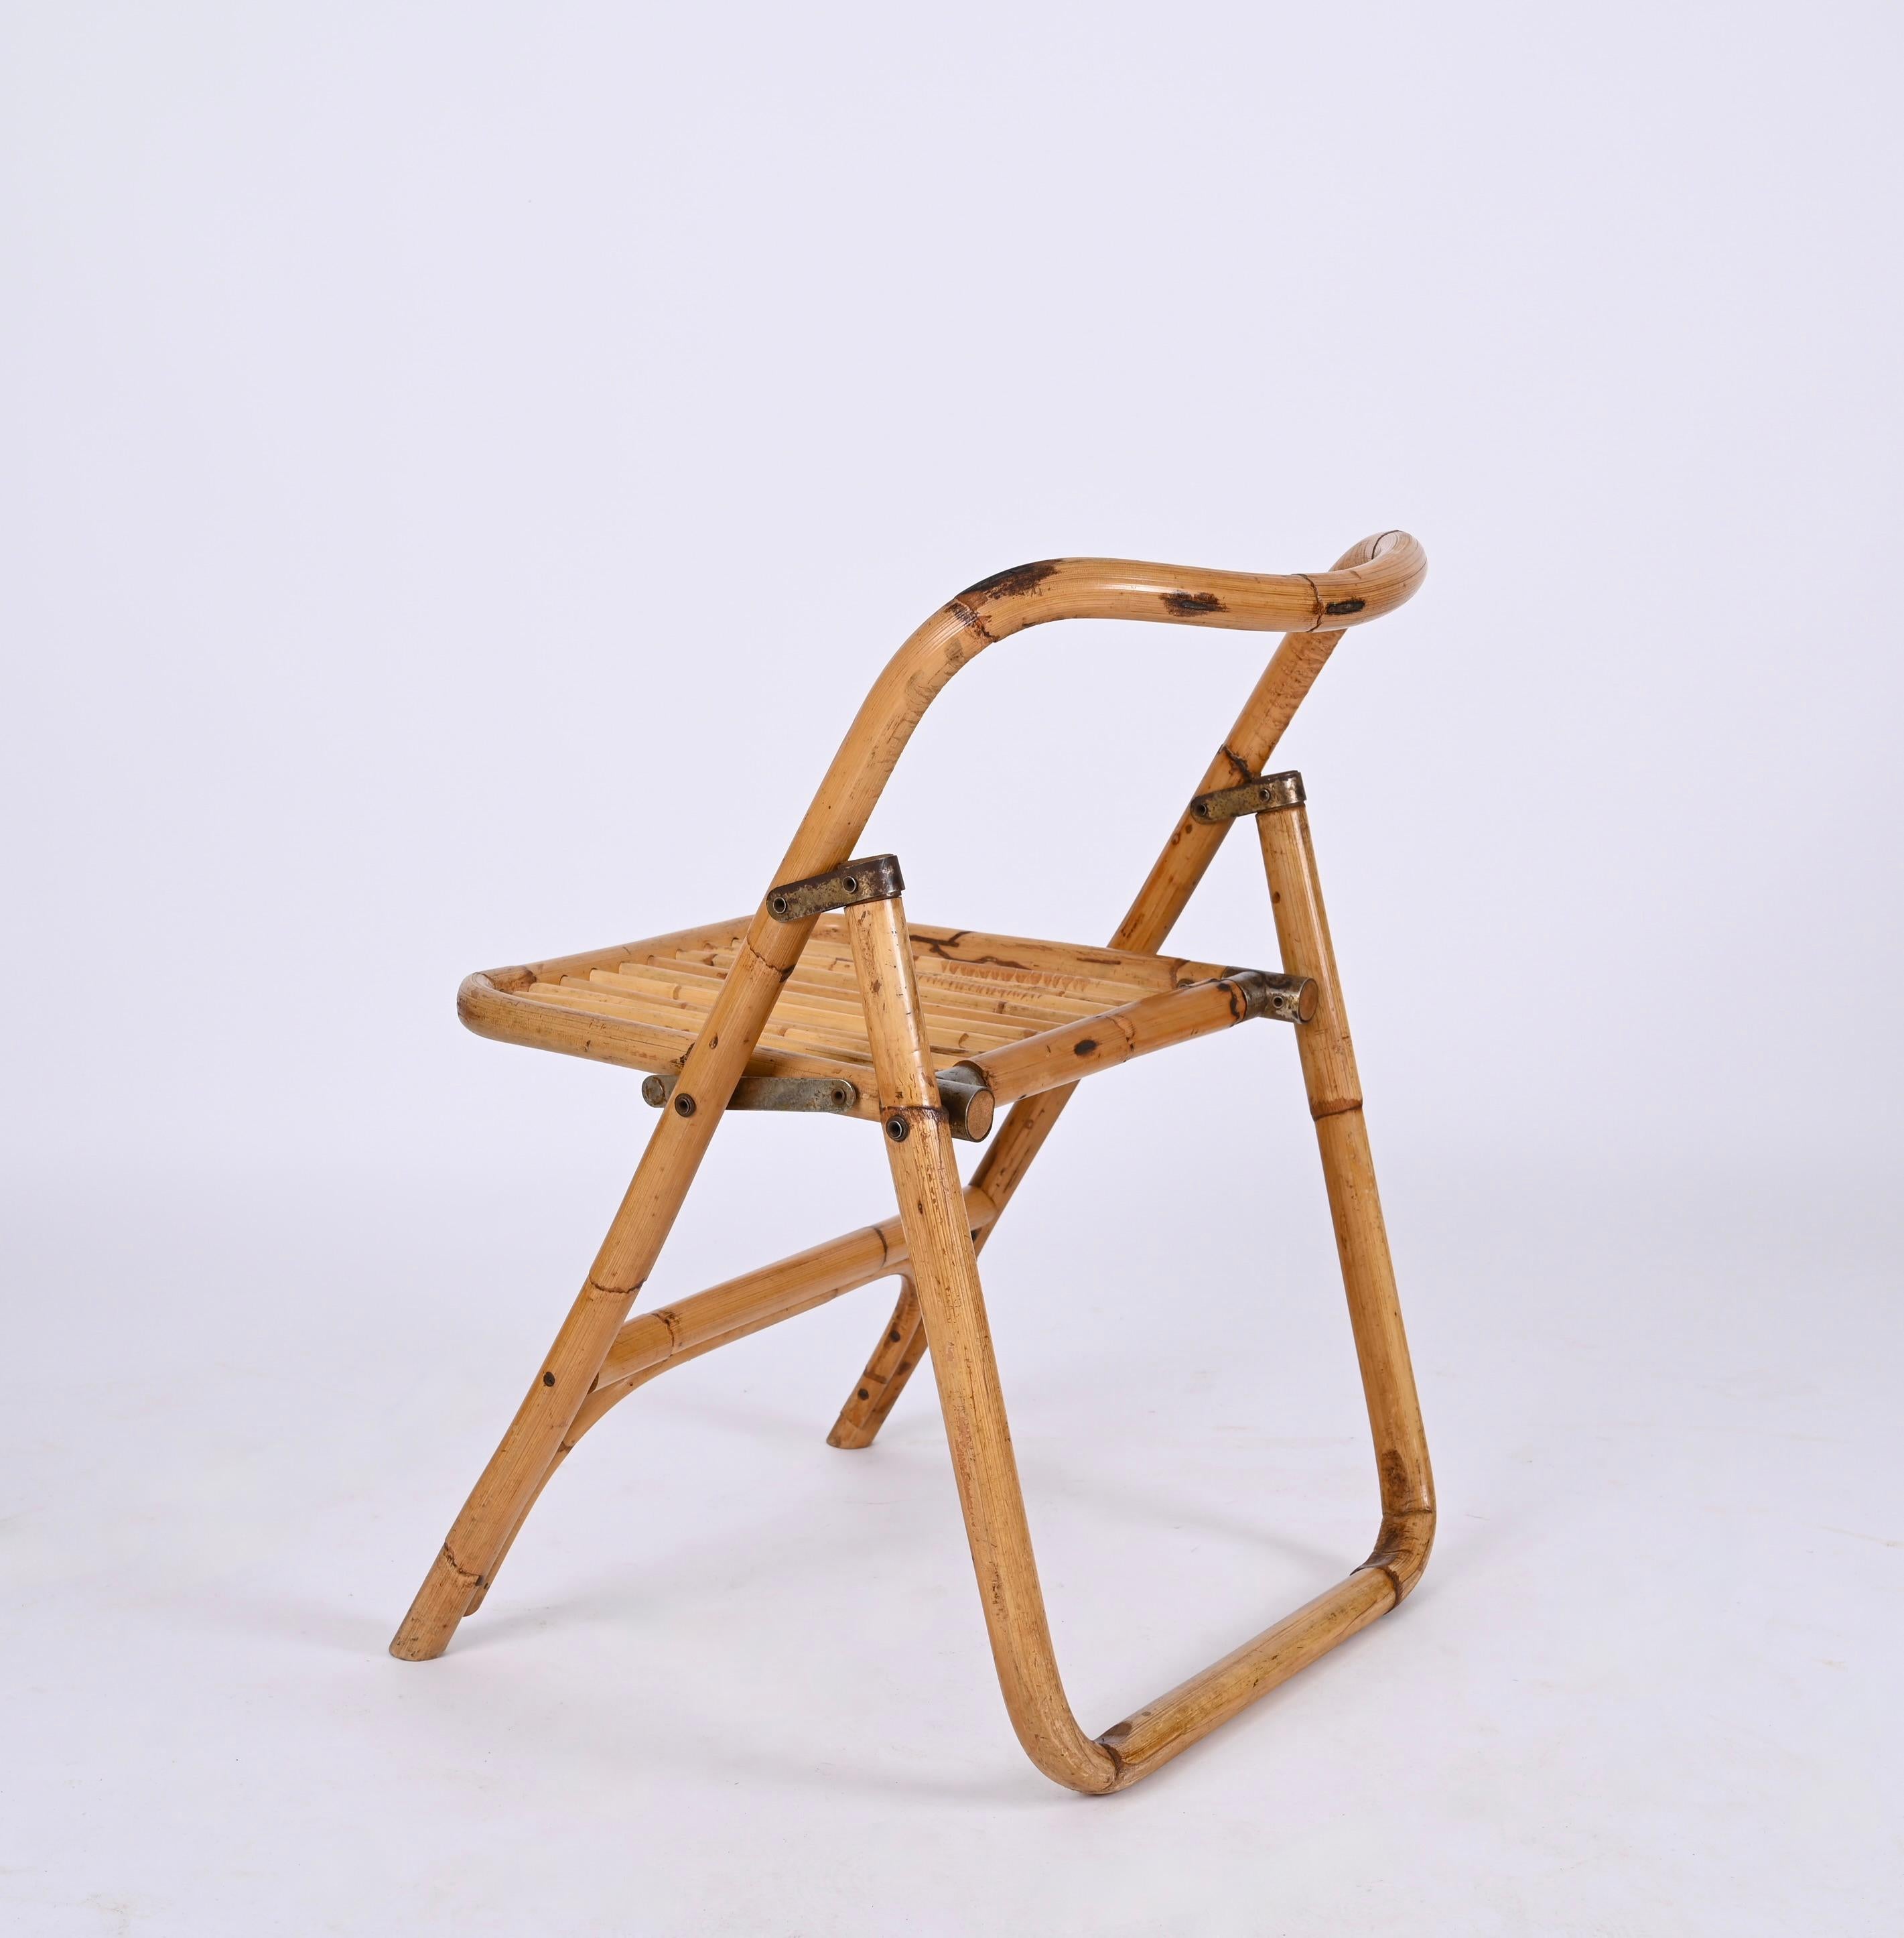 Wunderschöne Original Dal Vera Bambus-Klappstühle, hergestellt in Italien in den 1960er Jahren.

Die Linien dieser Stühle sind unglaublich, handgefertigt aus geschwungenem Bambus mit perfekten Proportionen, ein Beispiel für die italienische